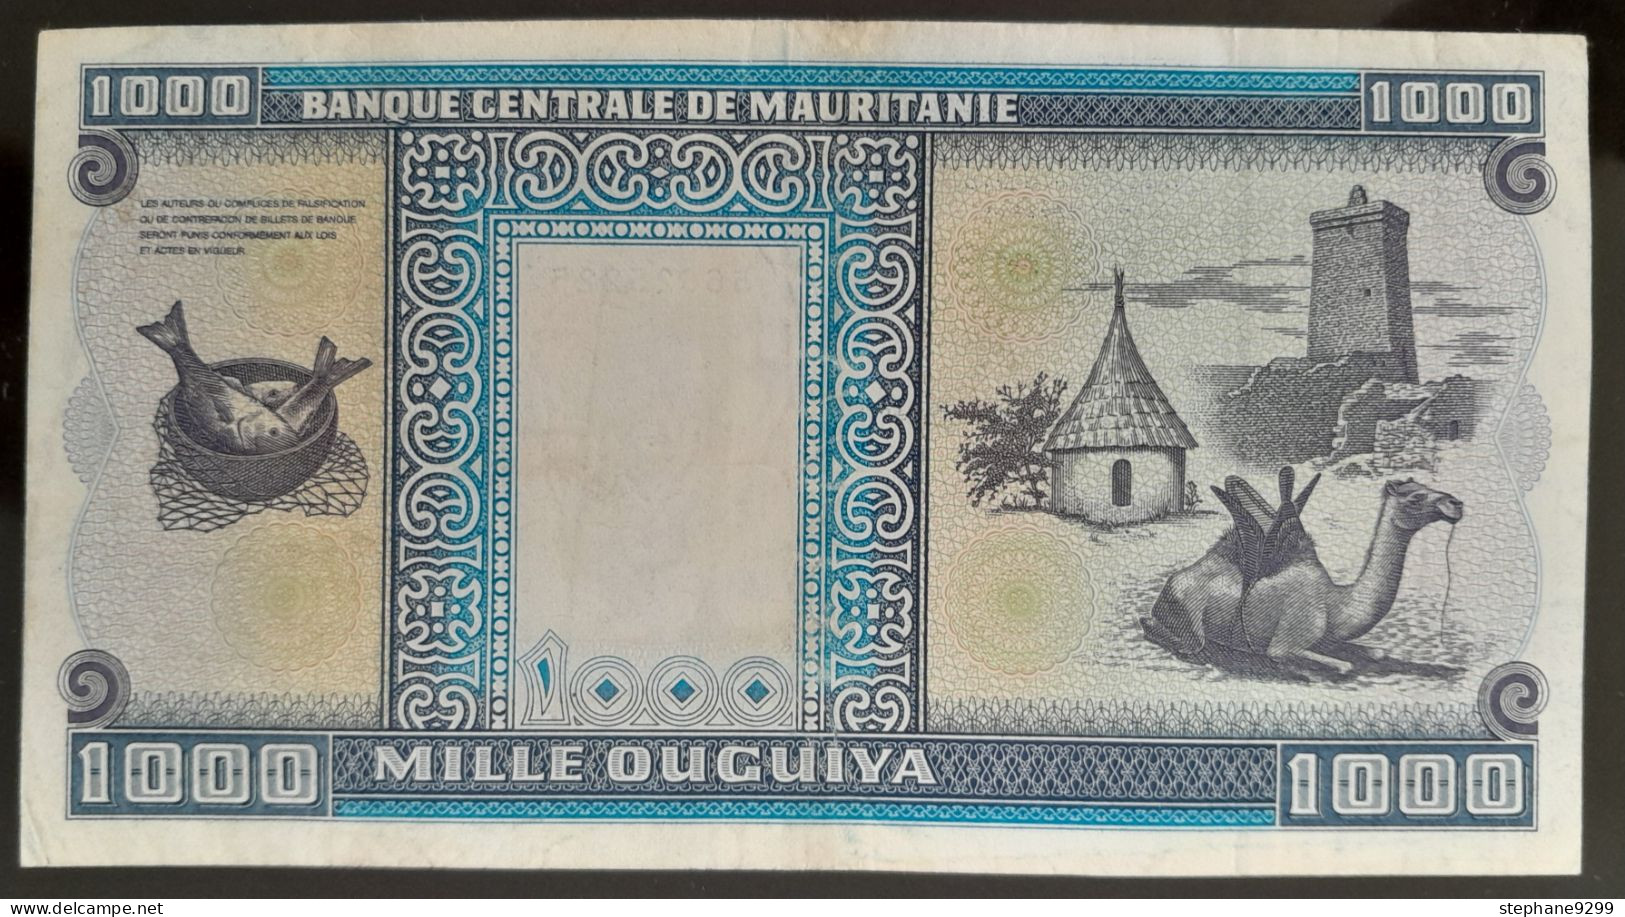 MAURITANIE 1000 OUGUIYA 1993 - Mauritanie